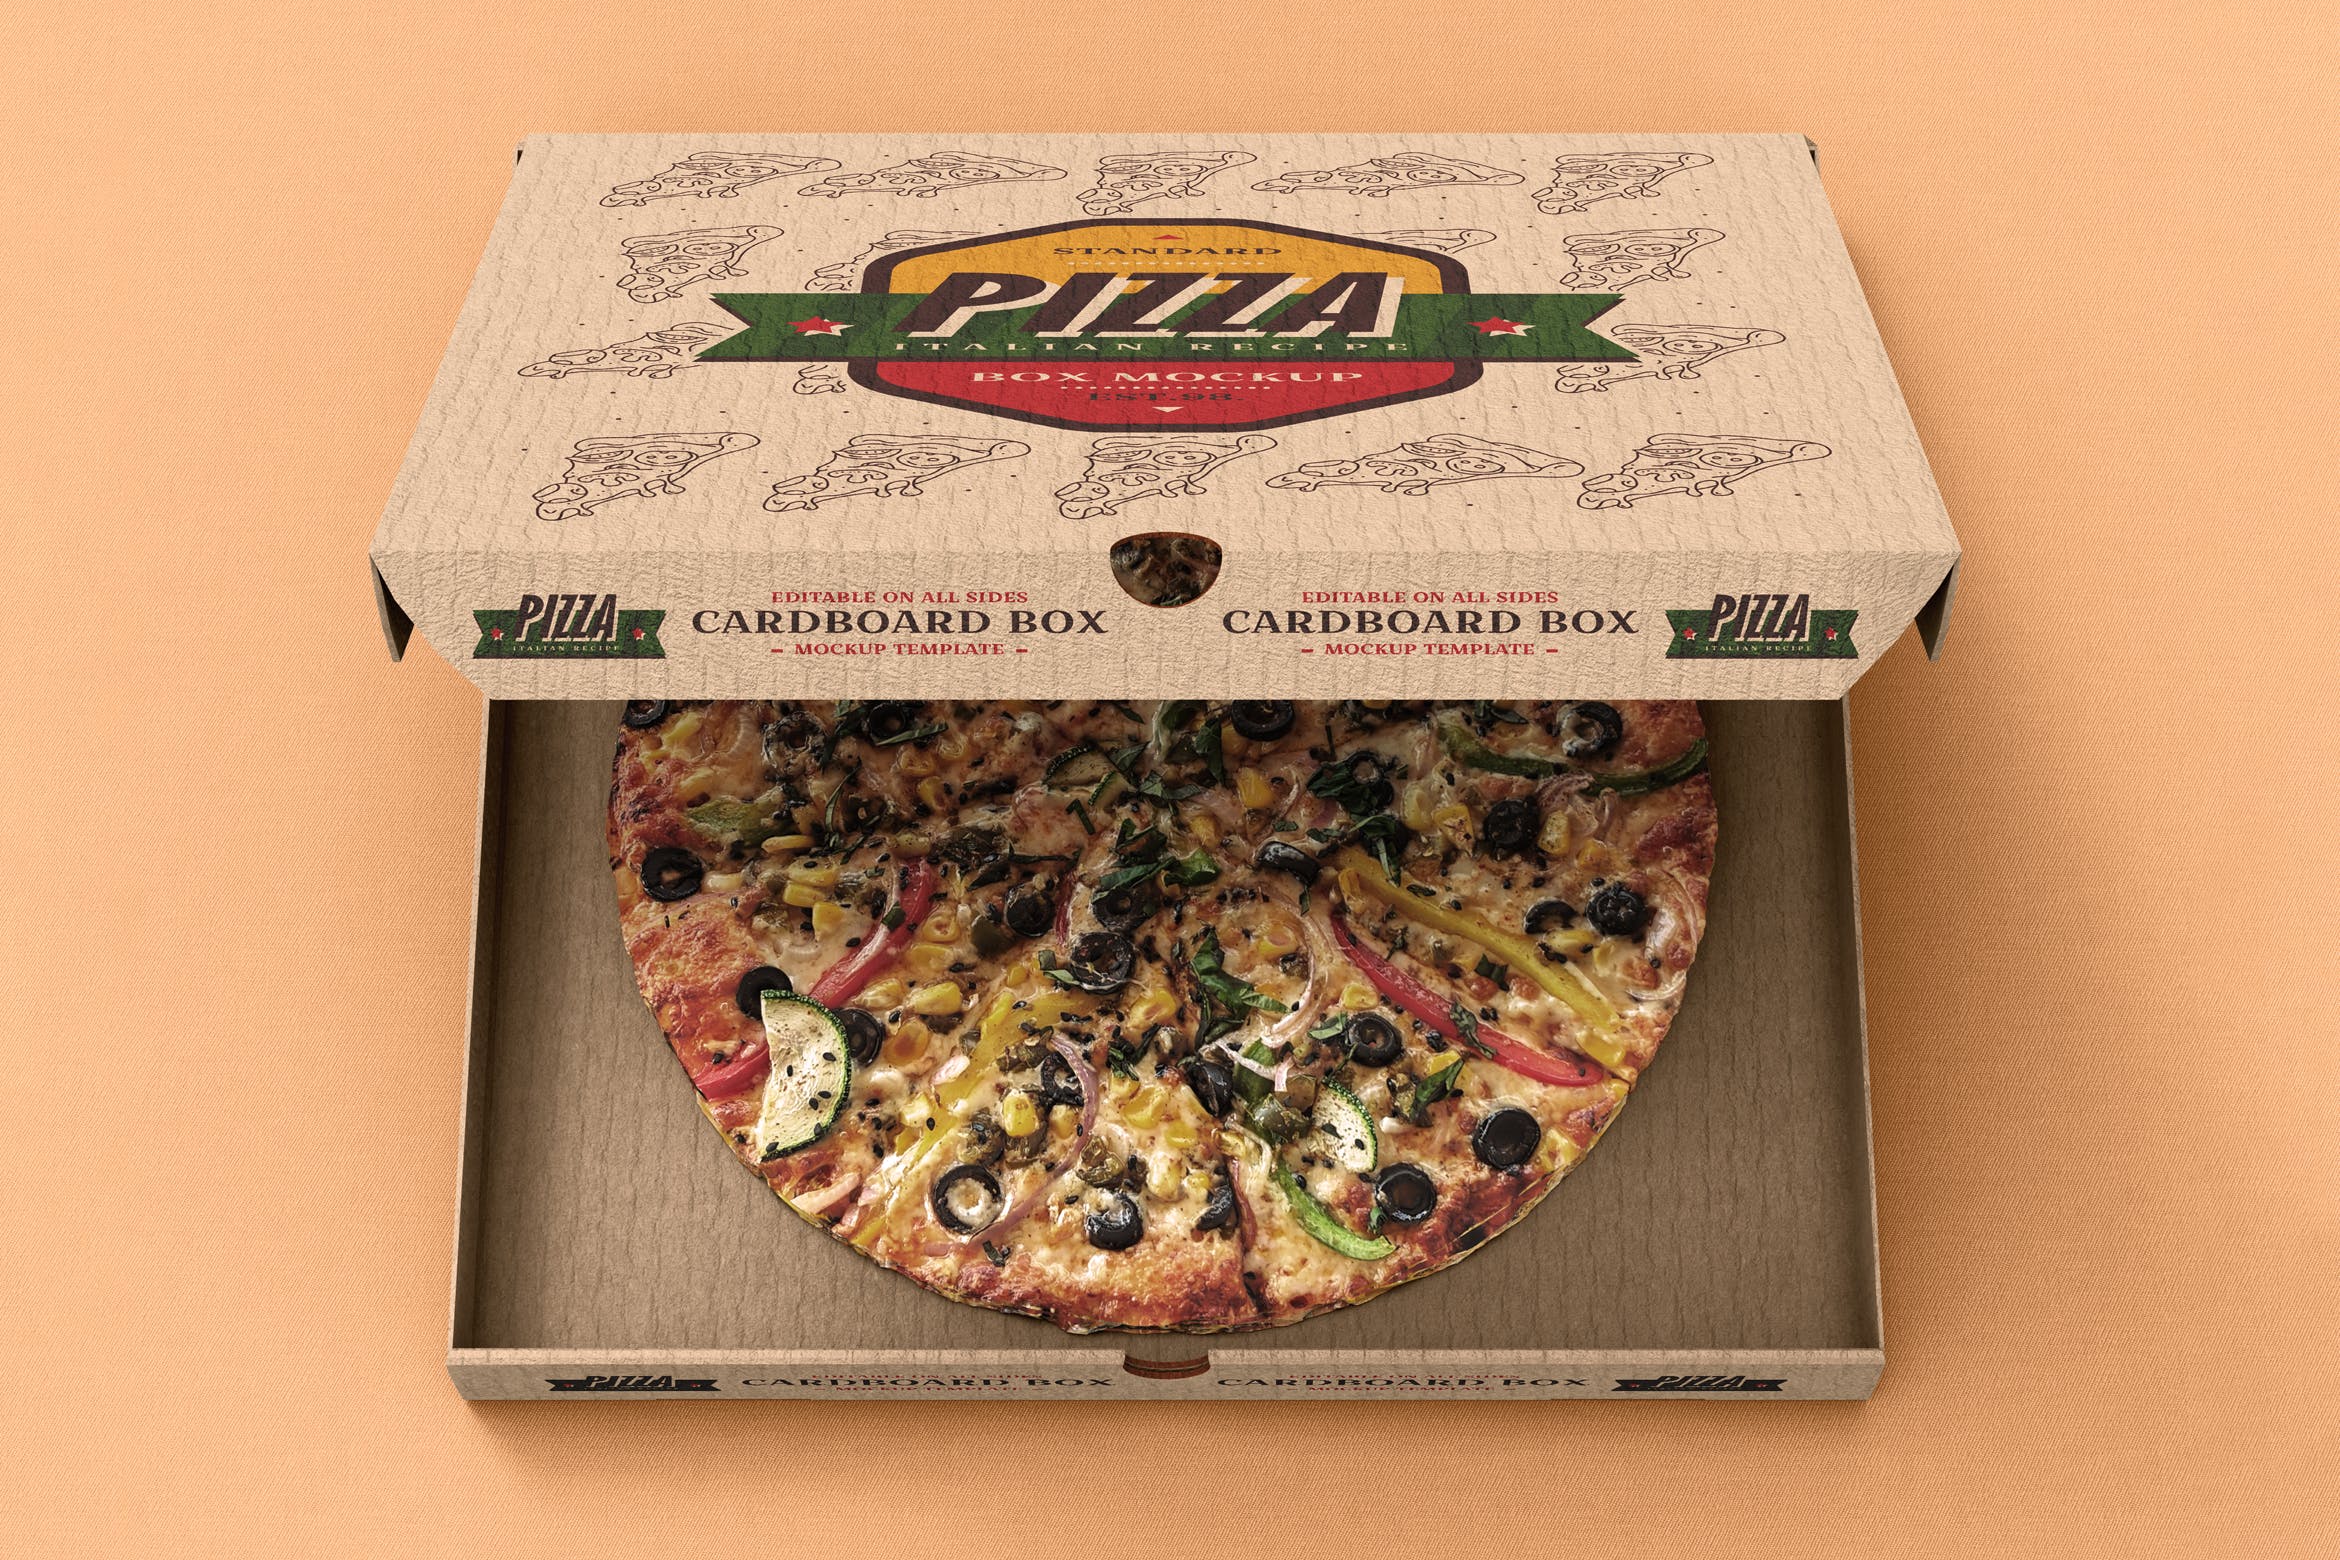 披萨牛皮包装盒设计效果图样机模板 Pizza Box Mock-Up Template插图